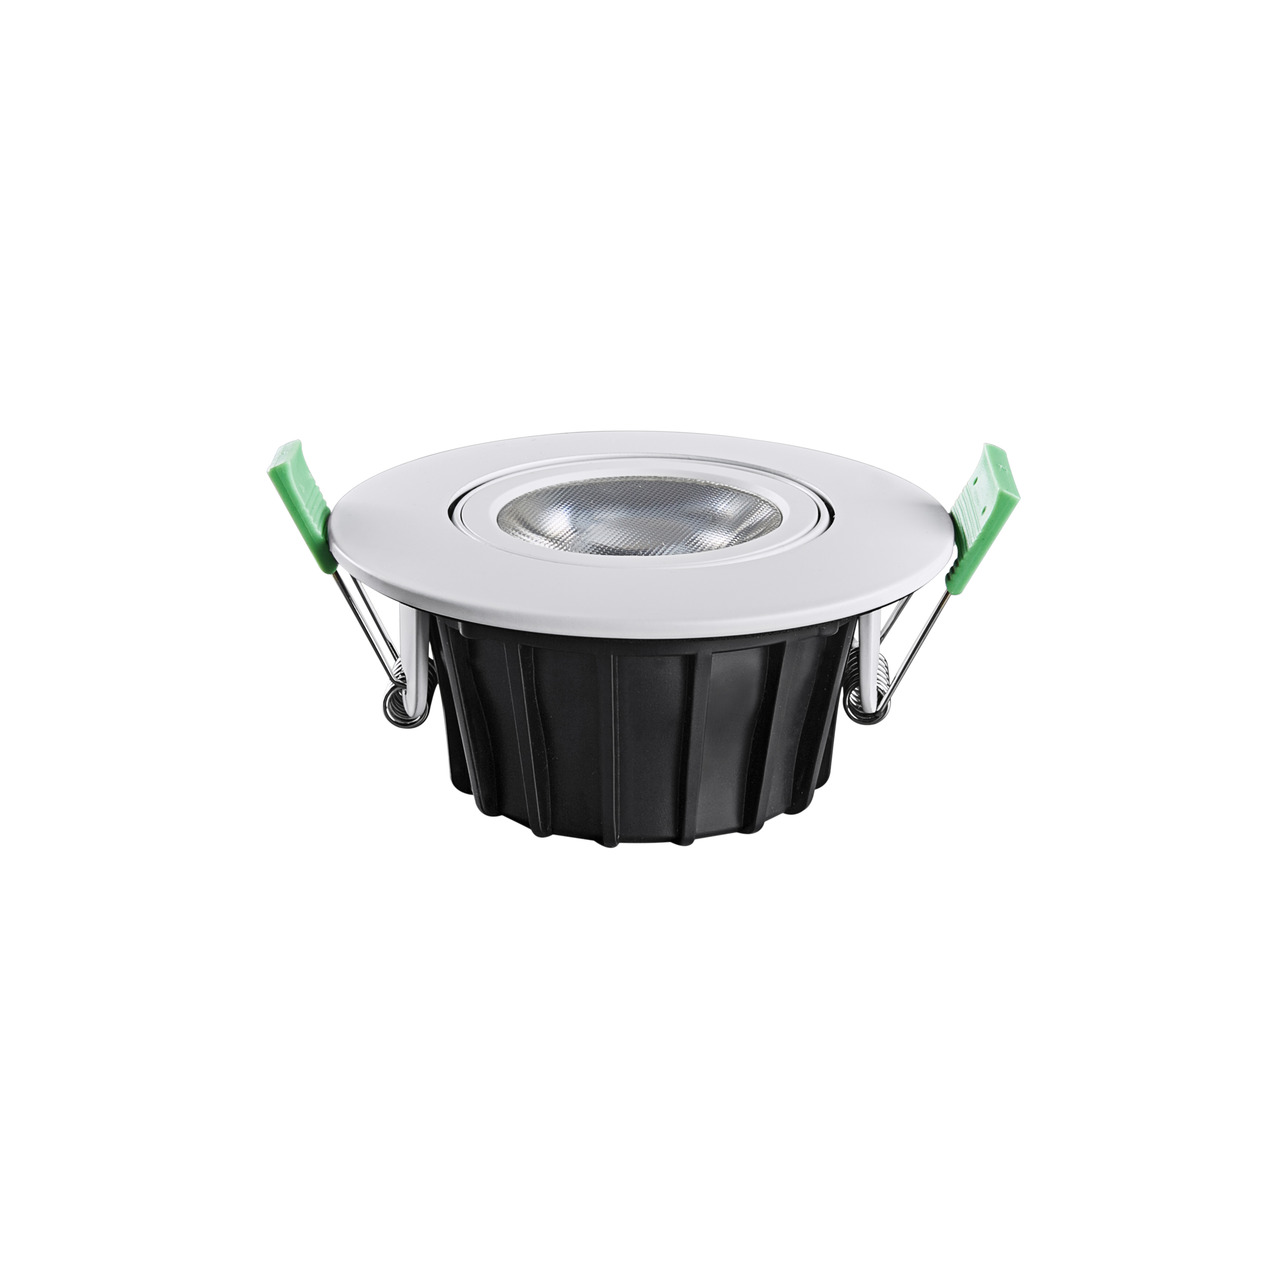 HEITRONIC 8-5-W-LED-Einbaustrahler DL8002- Farbtemperatur einstellbar- schwenkbar- dimmbar- IP65 unter Beleuchtung